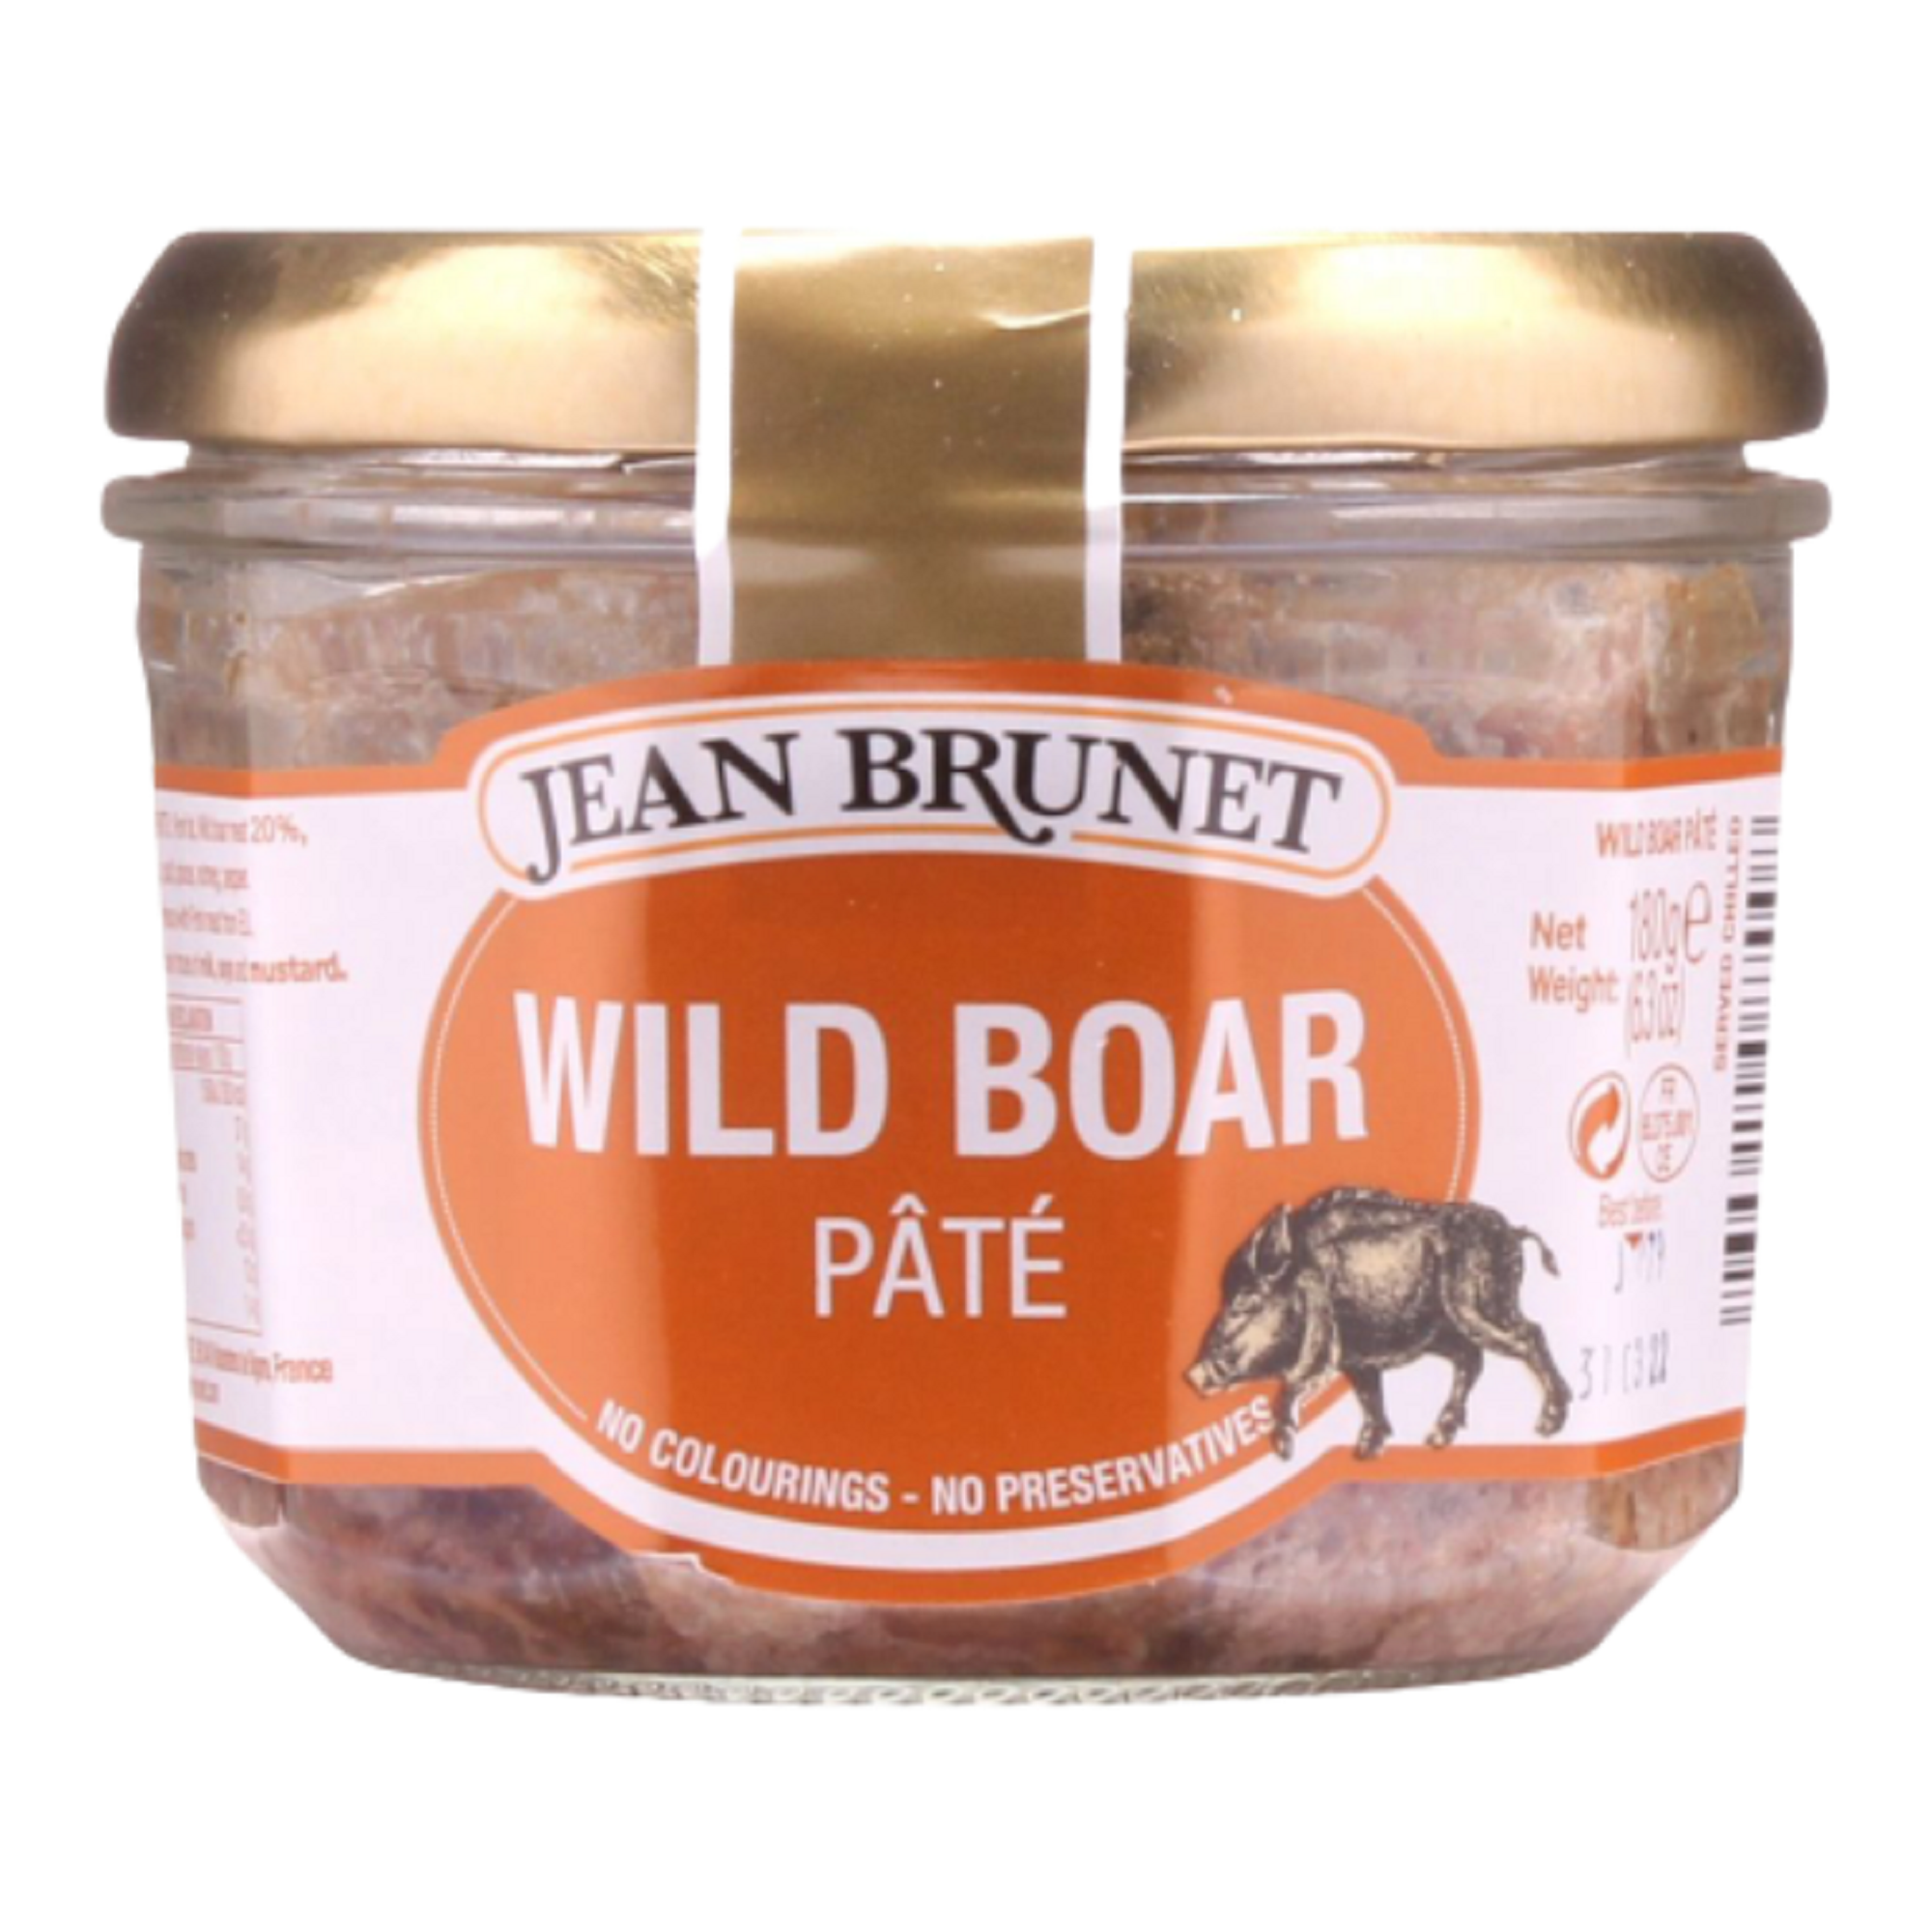 JEAN BRUNET WILD BOAR PATE (180g)